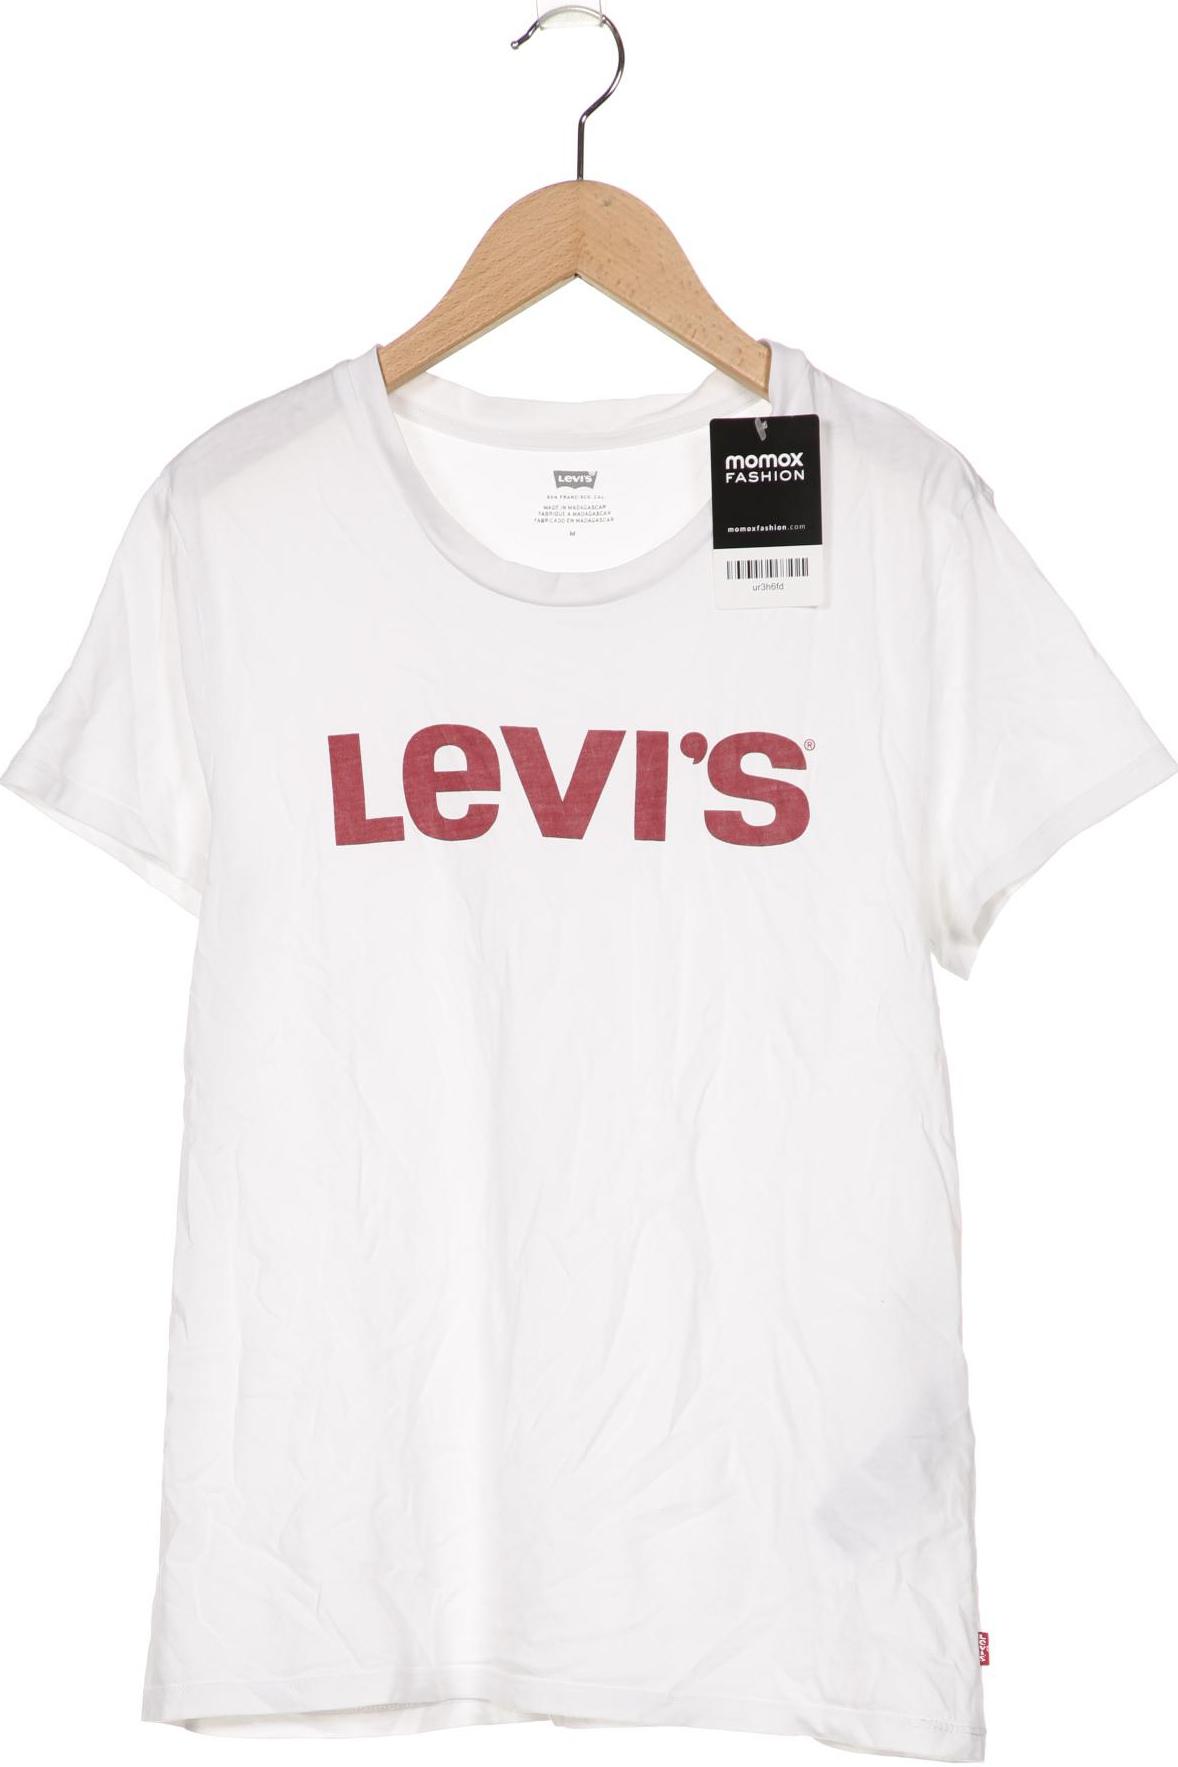 Levis Damen T-Shirt, weiß von Levis